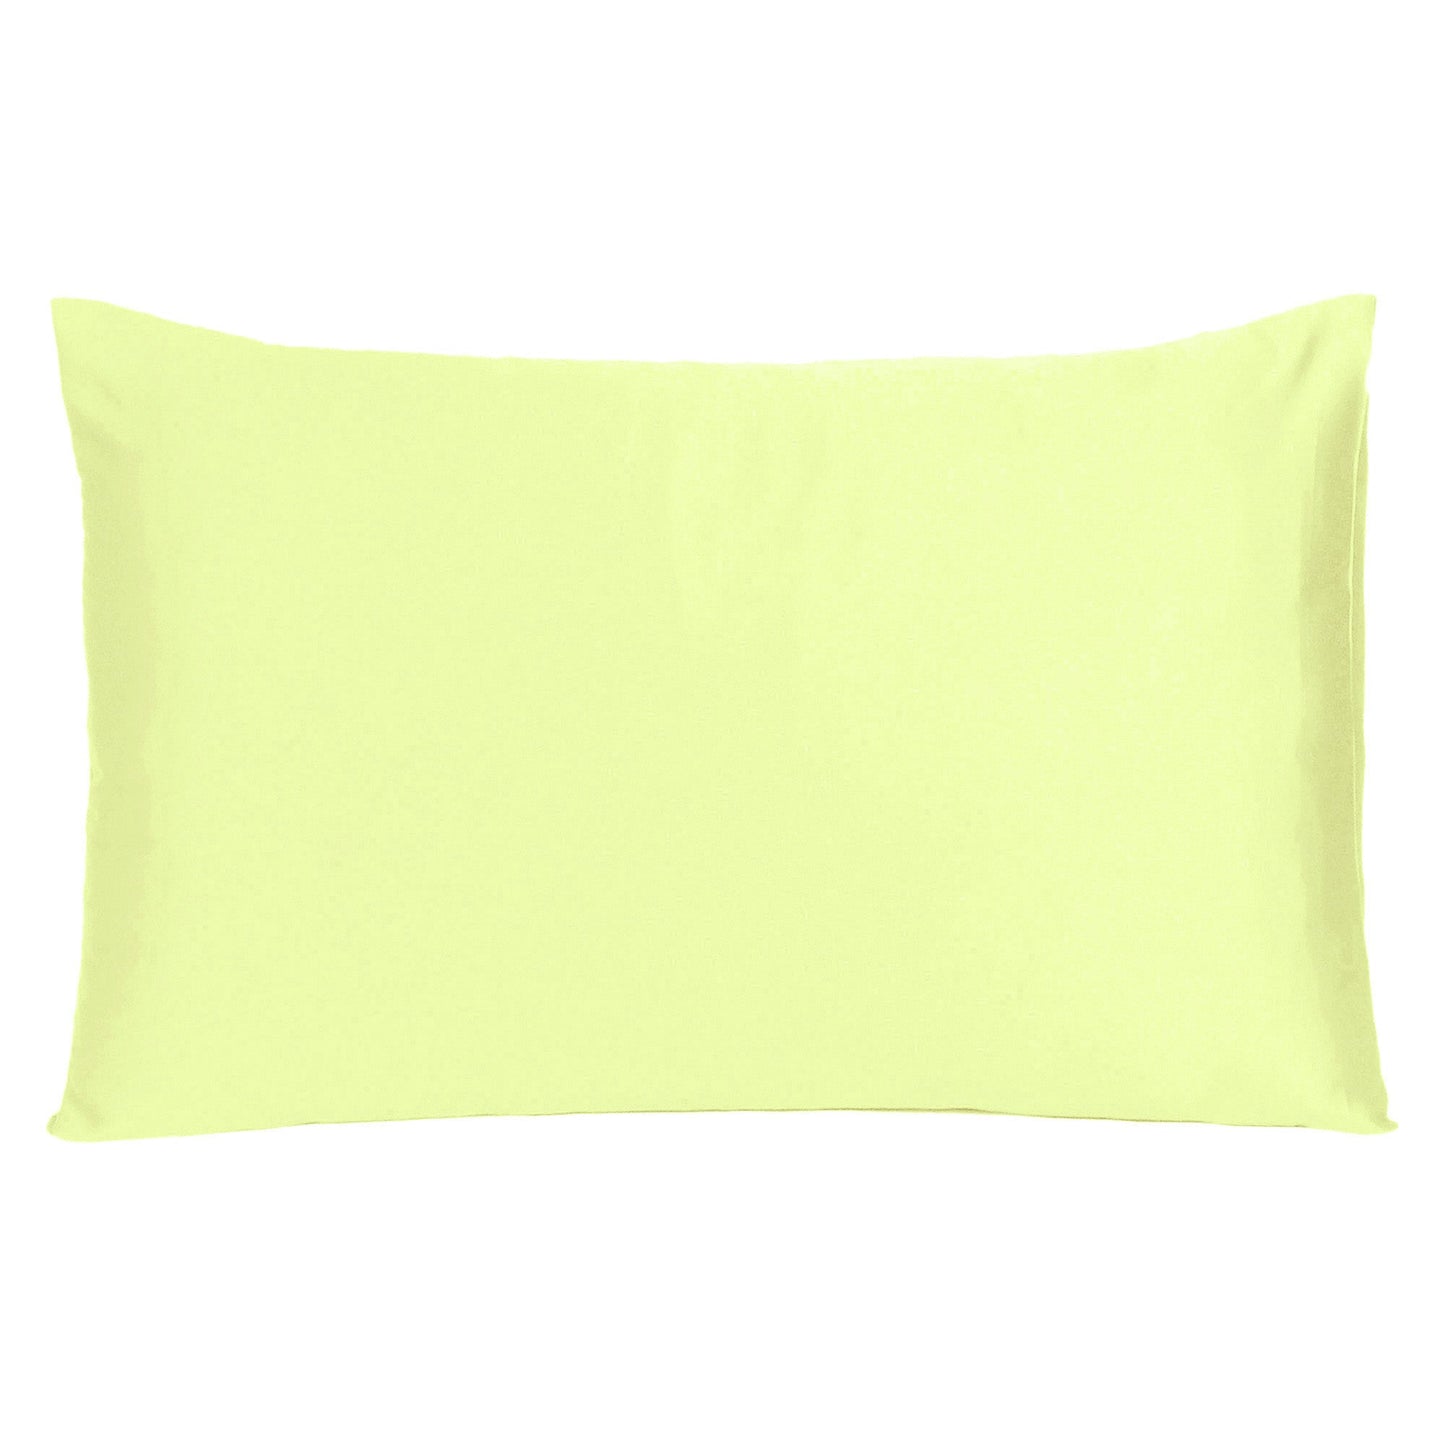 Luxury Soft Plain Satin Silk Pillowcases in Set of 2 - Lemon Grass